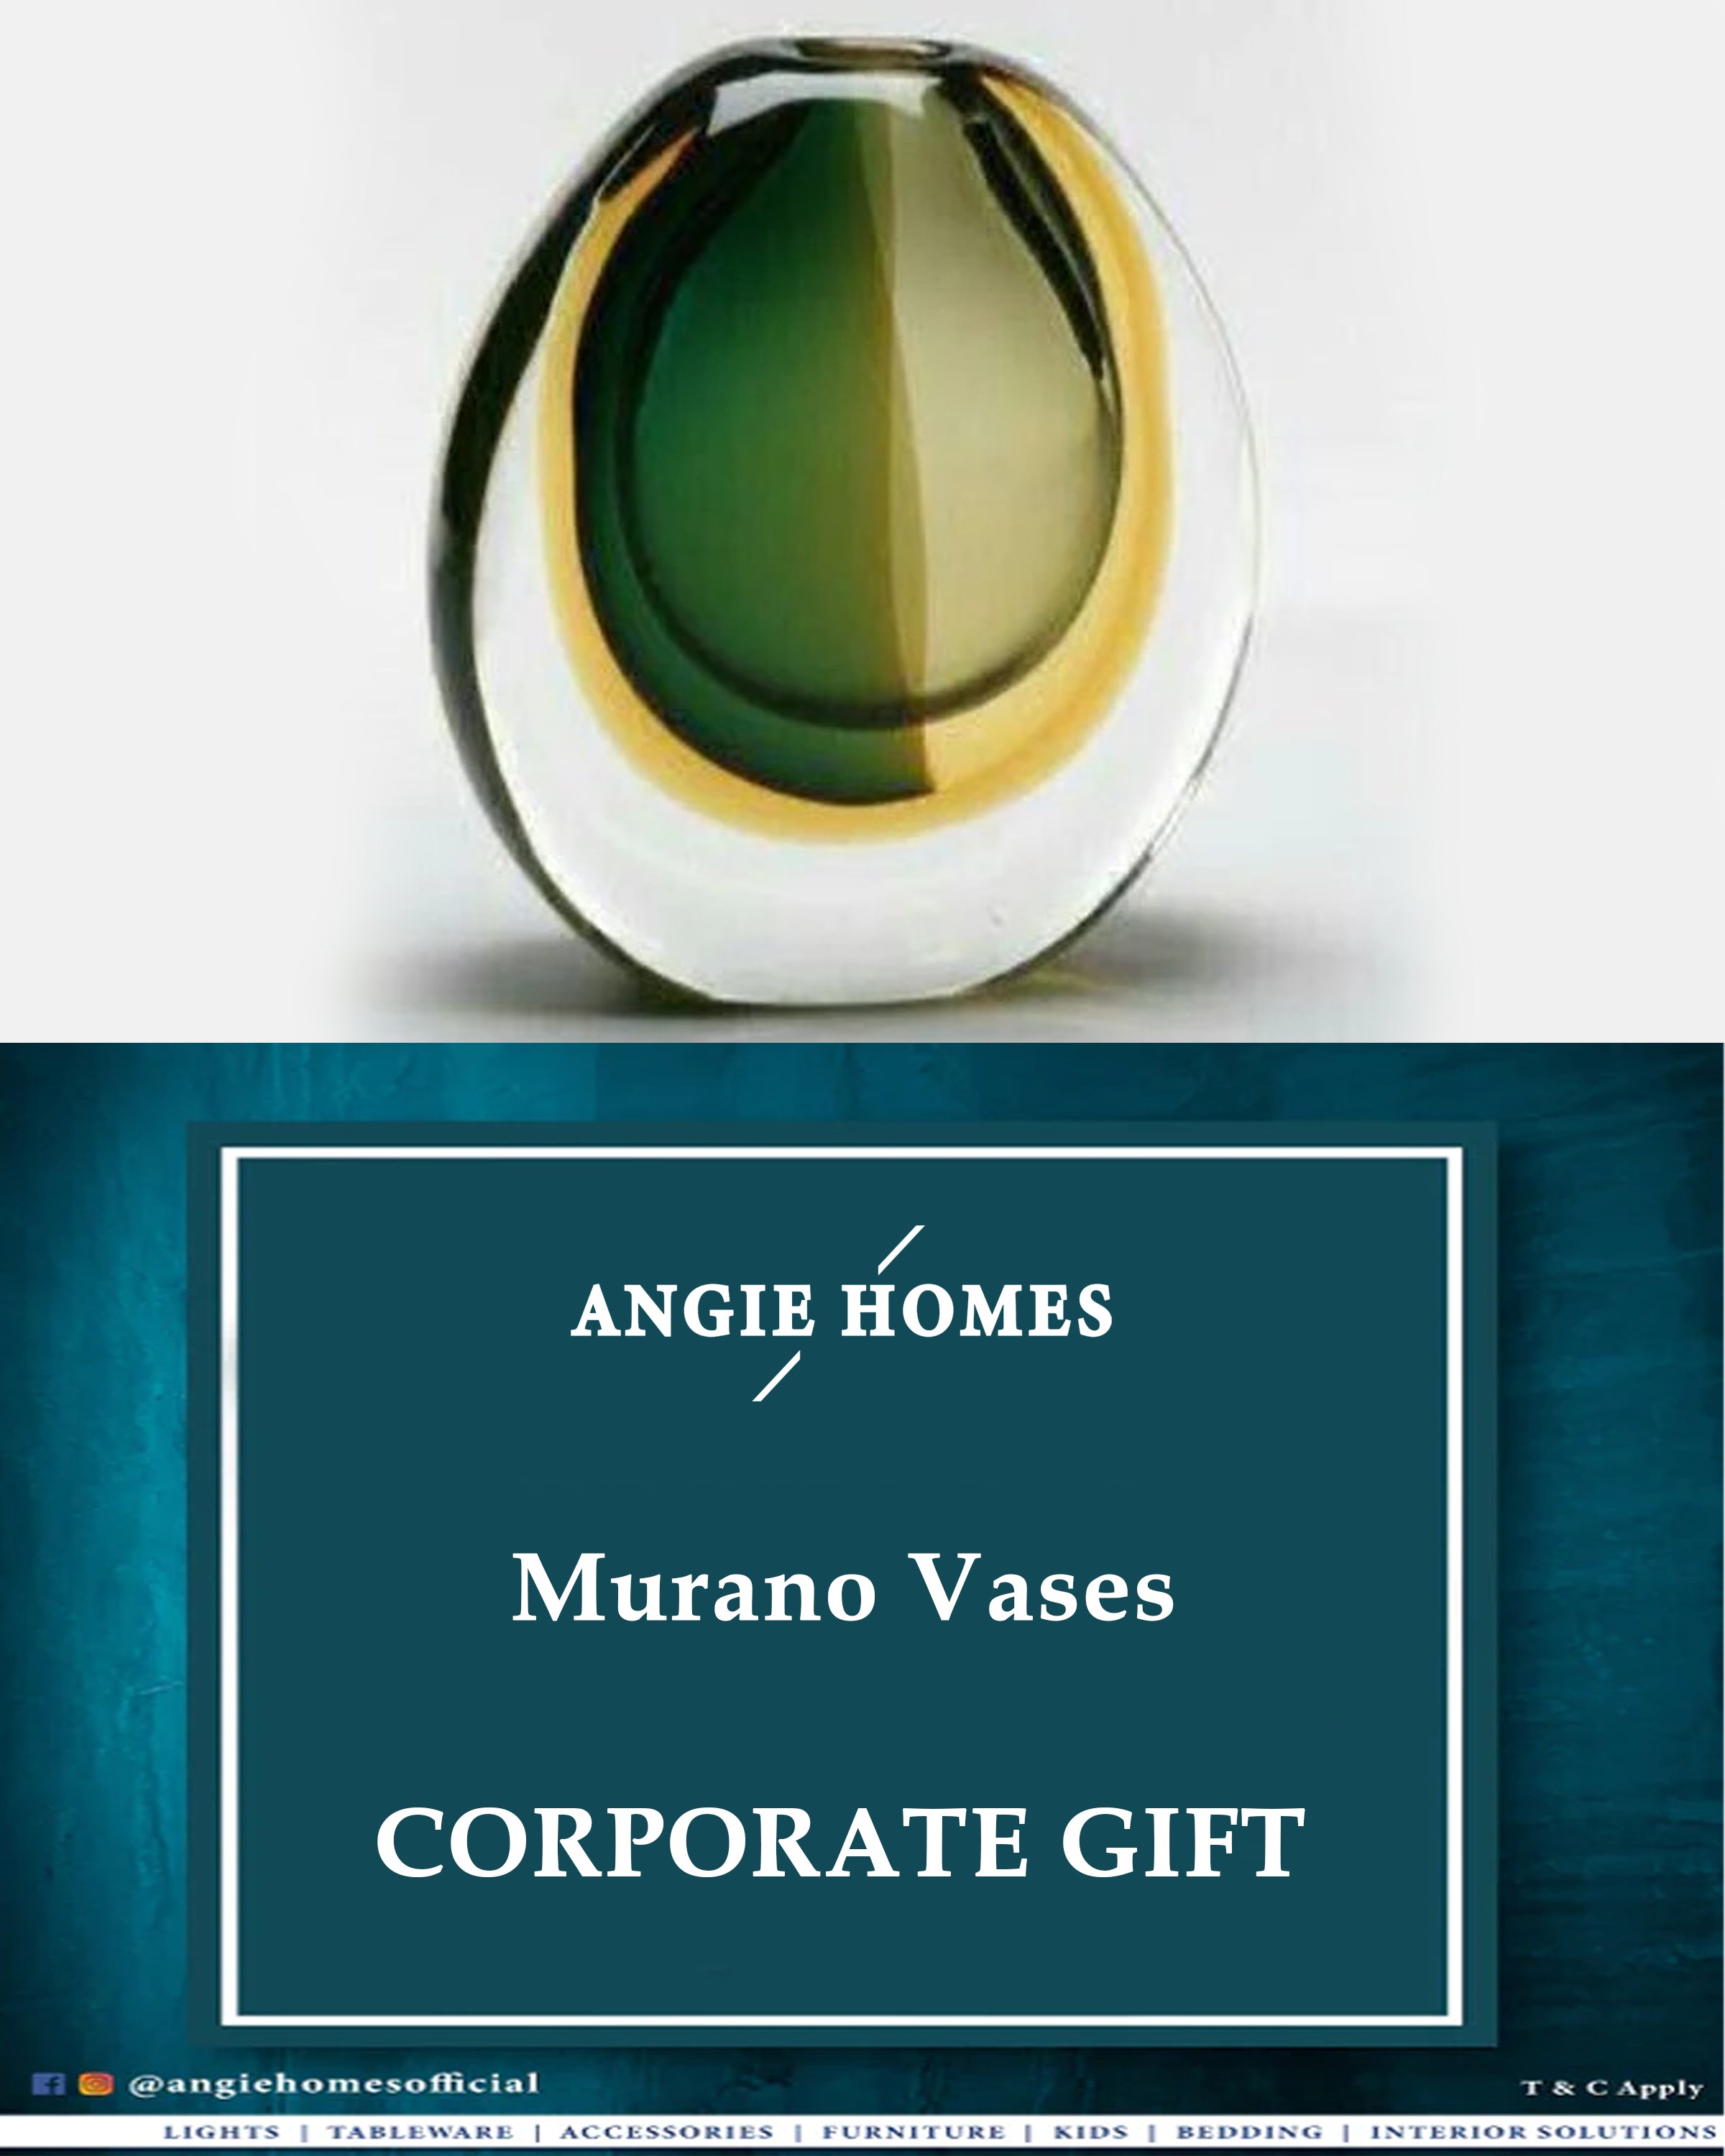 Murano Glass Vases Murano Wedding, House Warming & Corporate Gift ANGIE HOMES